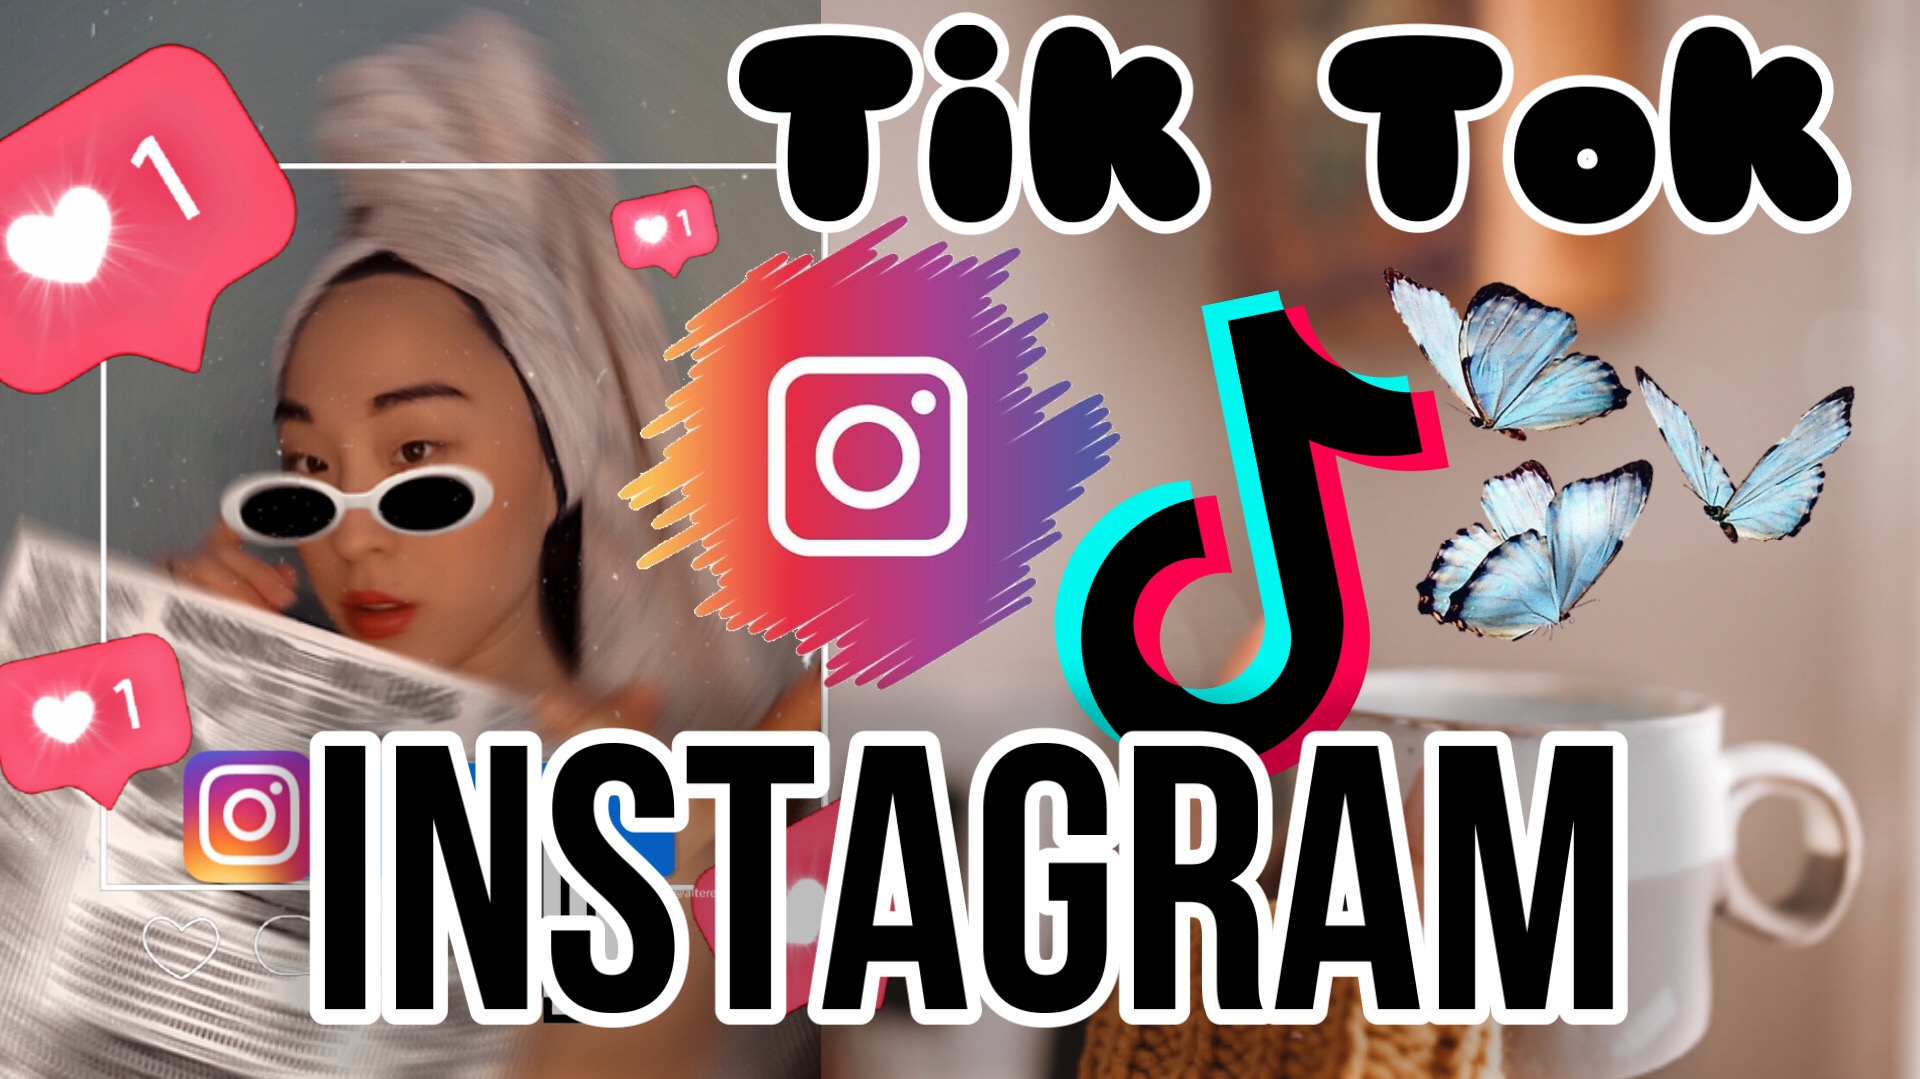 Лайфхаки Instagram Как в одну сторис добавить несколько фото? Обработка видео в Tik Tok